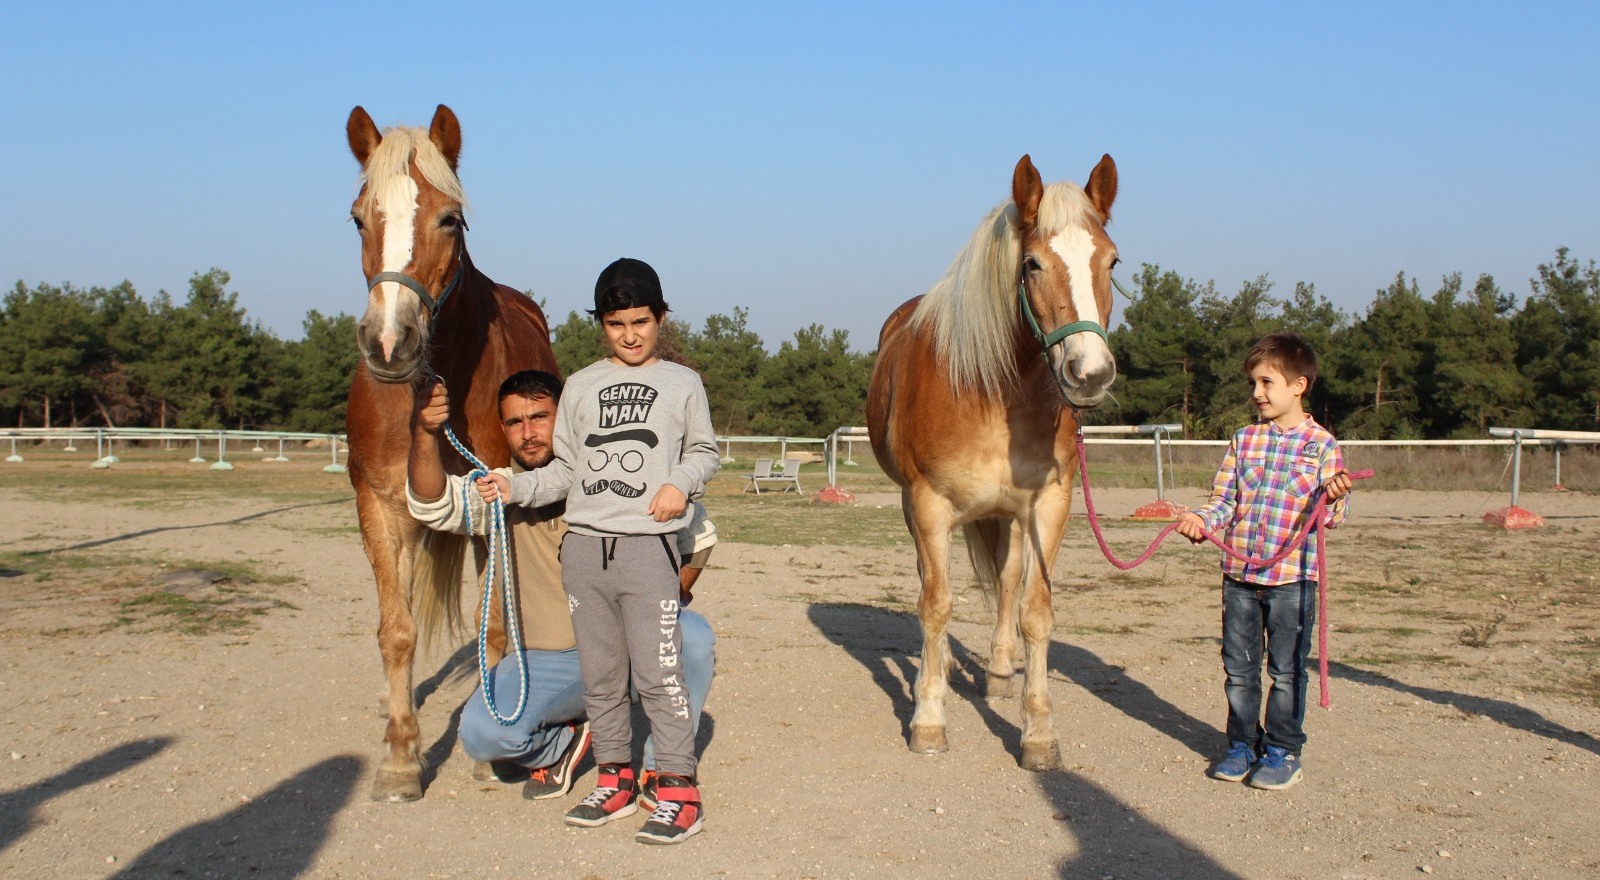  İzmir’in fayton atları ikinci baharı Bursa’da yaşıyor 